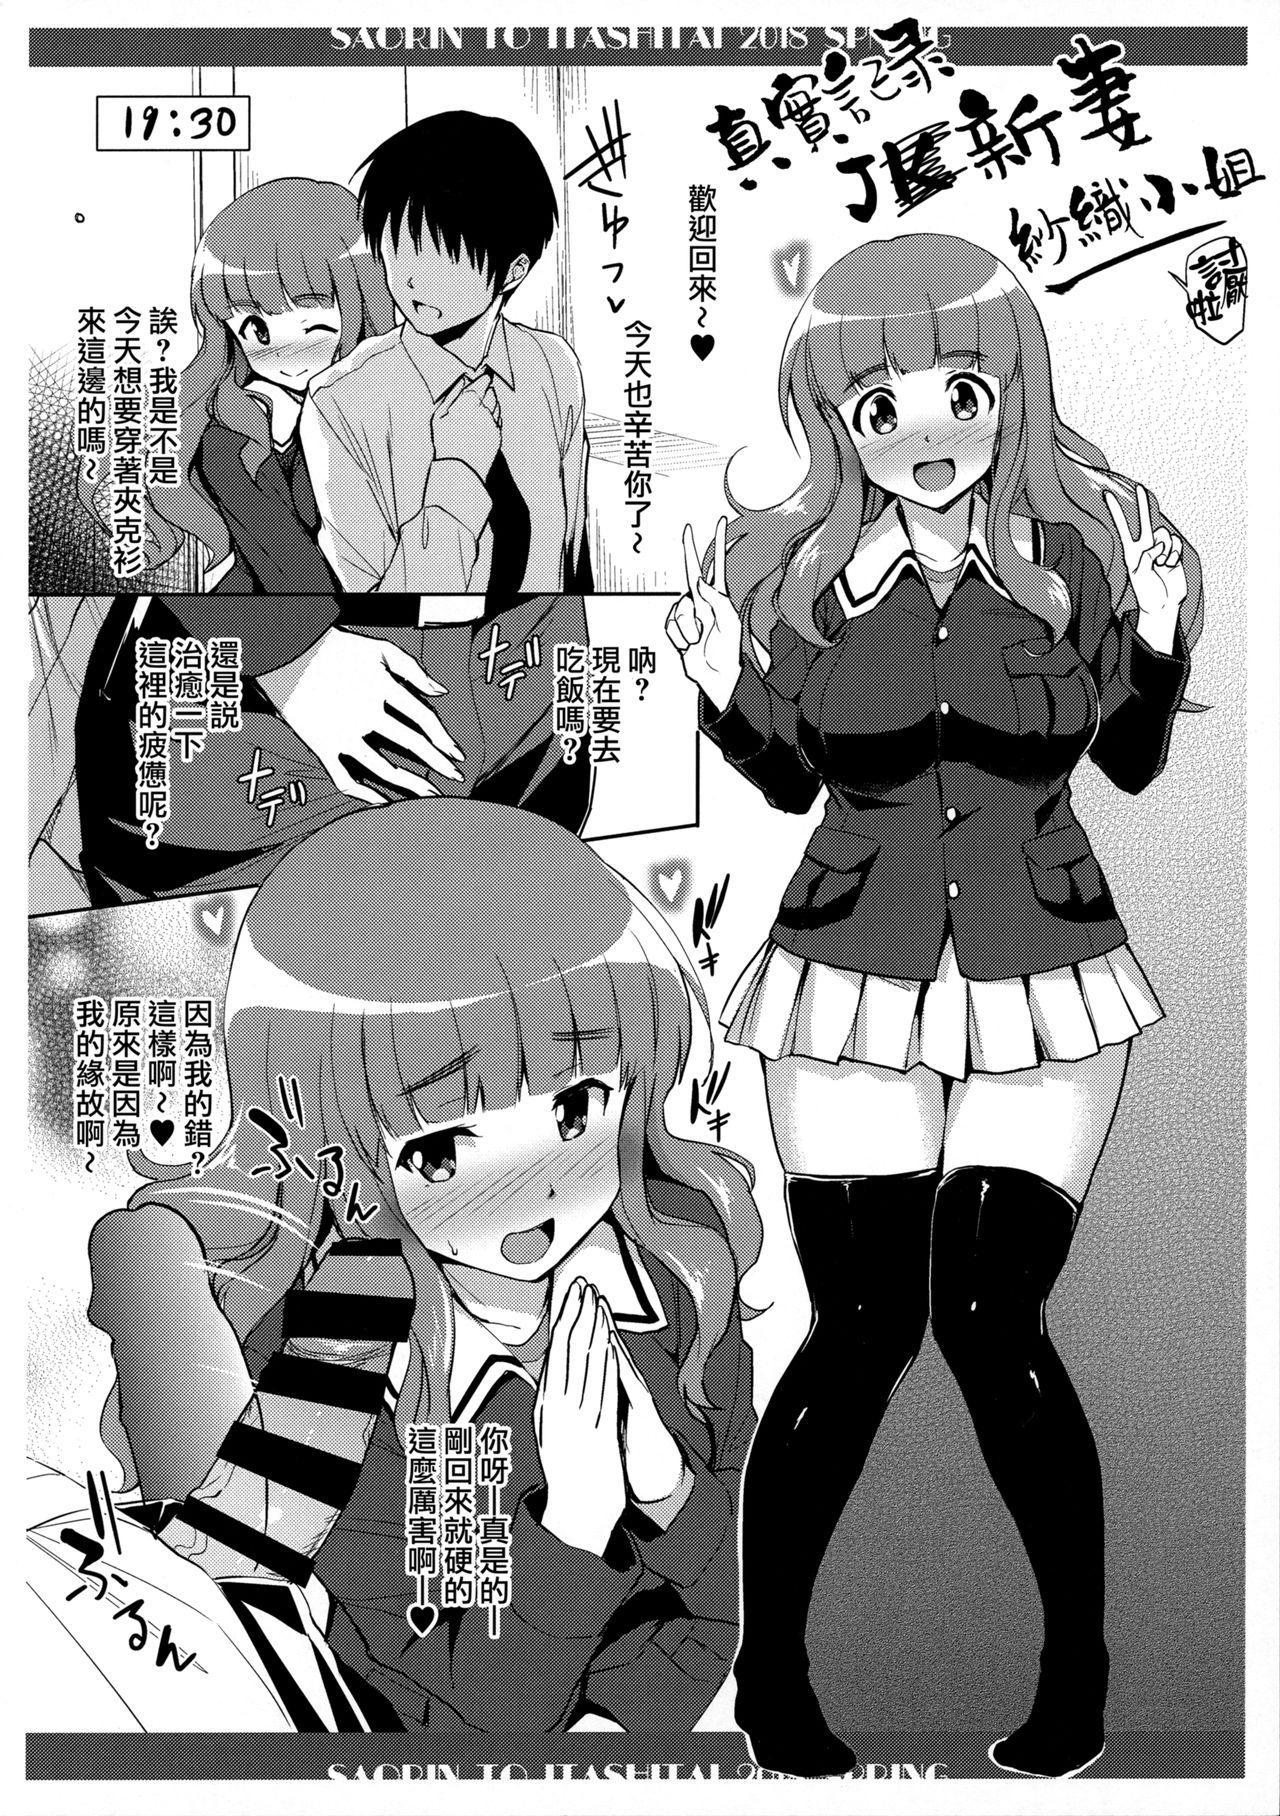 Horny Slut Saorin to Itashitai. 2018 Haru - Girls und panzer Bush - Page 3